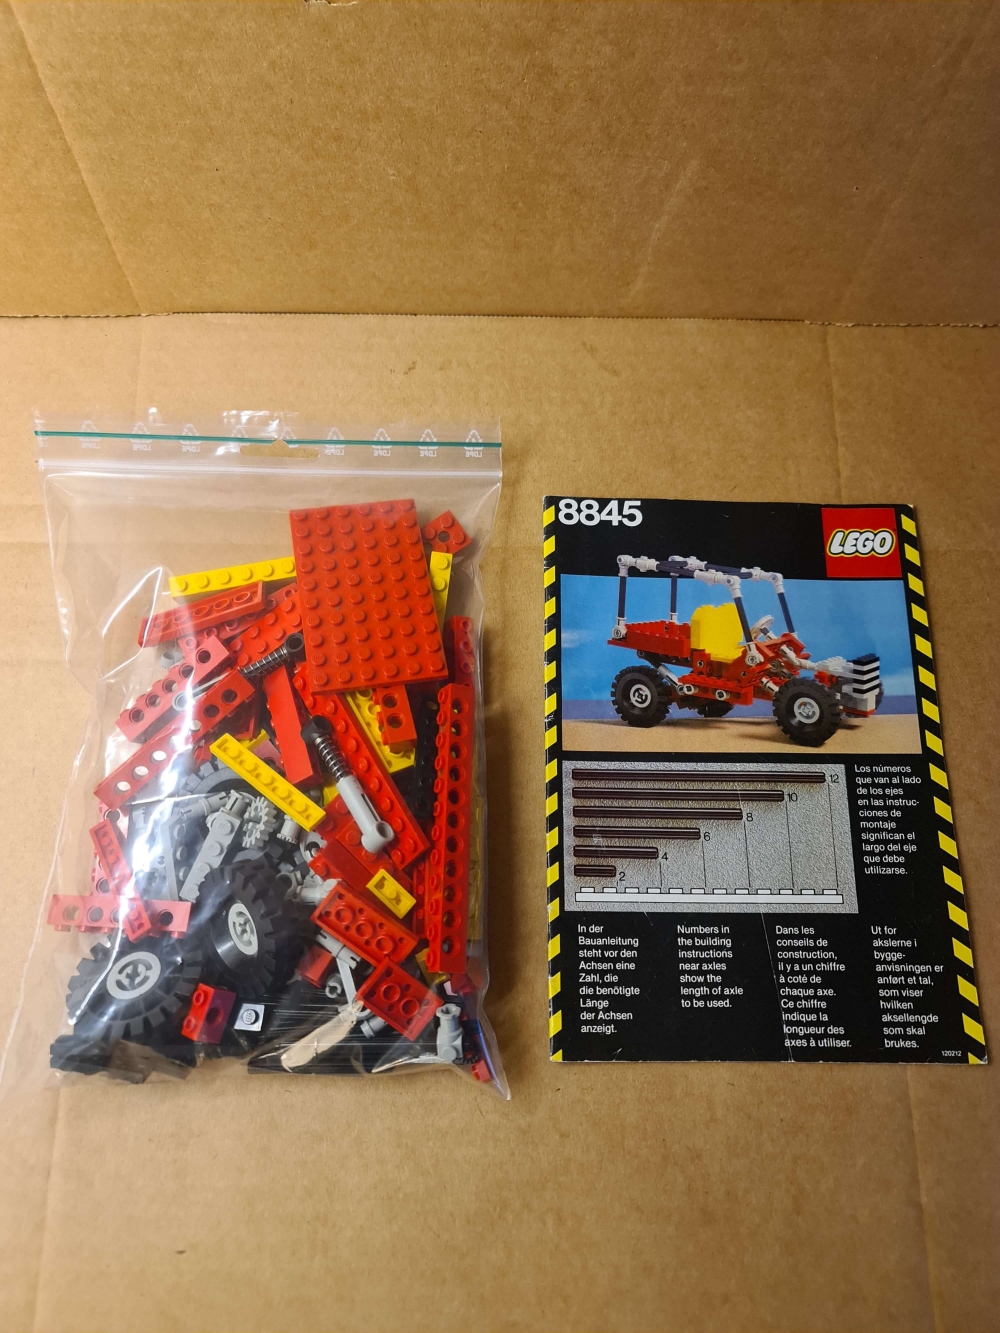 Sett 8845 fra Lego Technic serien.
Komplett med manual og alle ekstra deler som trengs for alternative modeller.
Gammelt sett så noe bruksmerker vil forekomme. 